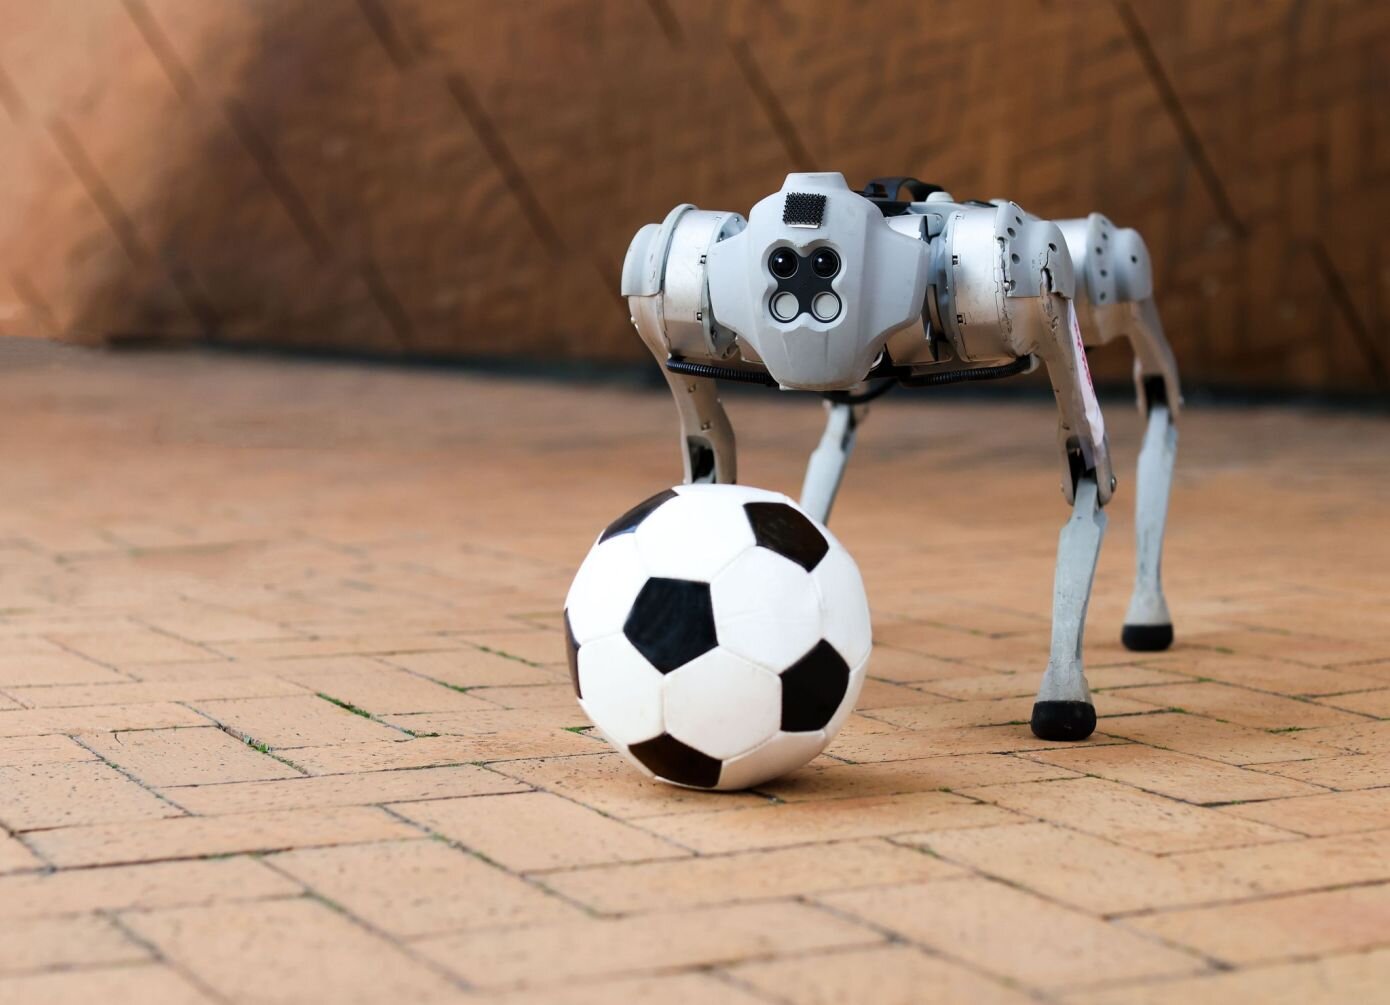 Περισσότερες πληροφορίες για "Αυτό το τετράποδο ρομπότ παίζει ποδόσφαιρο στο γρασίδι, στη λάσπη ή στην άμμο"